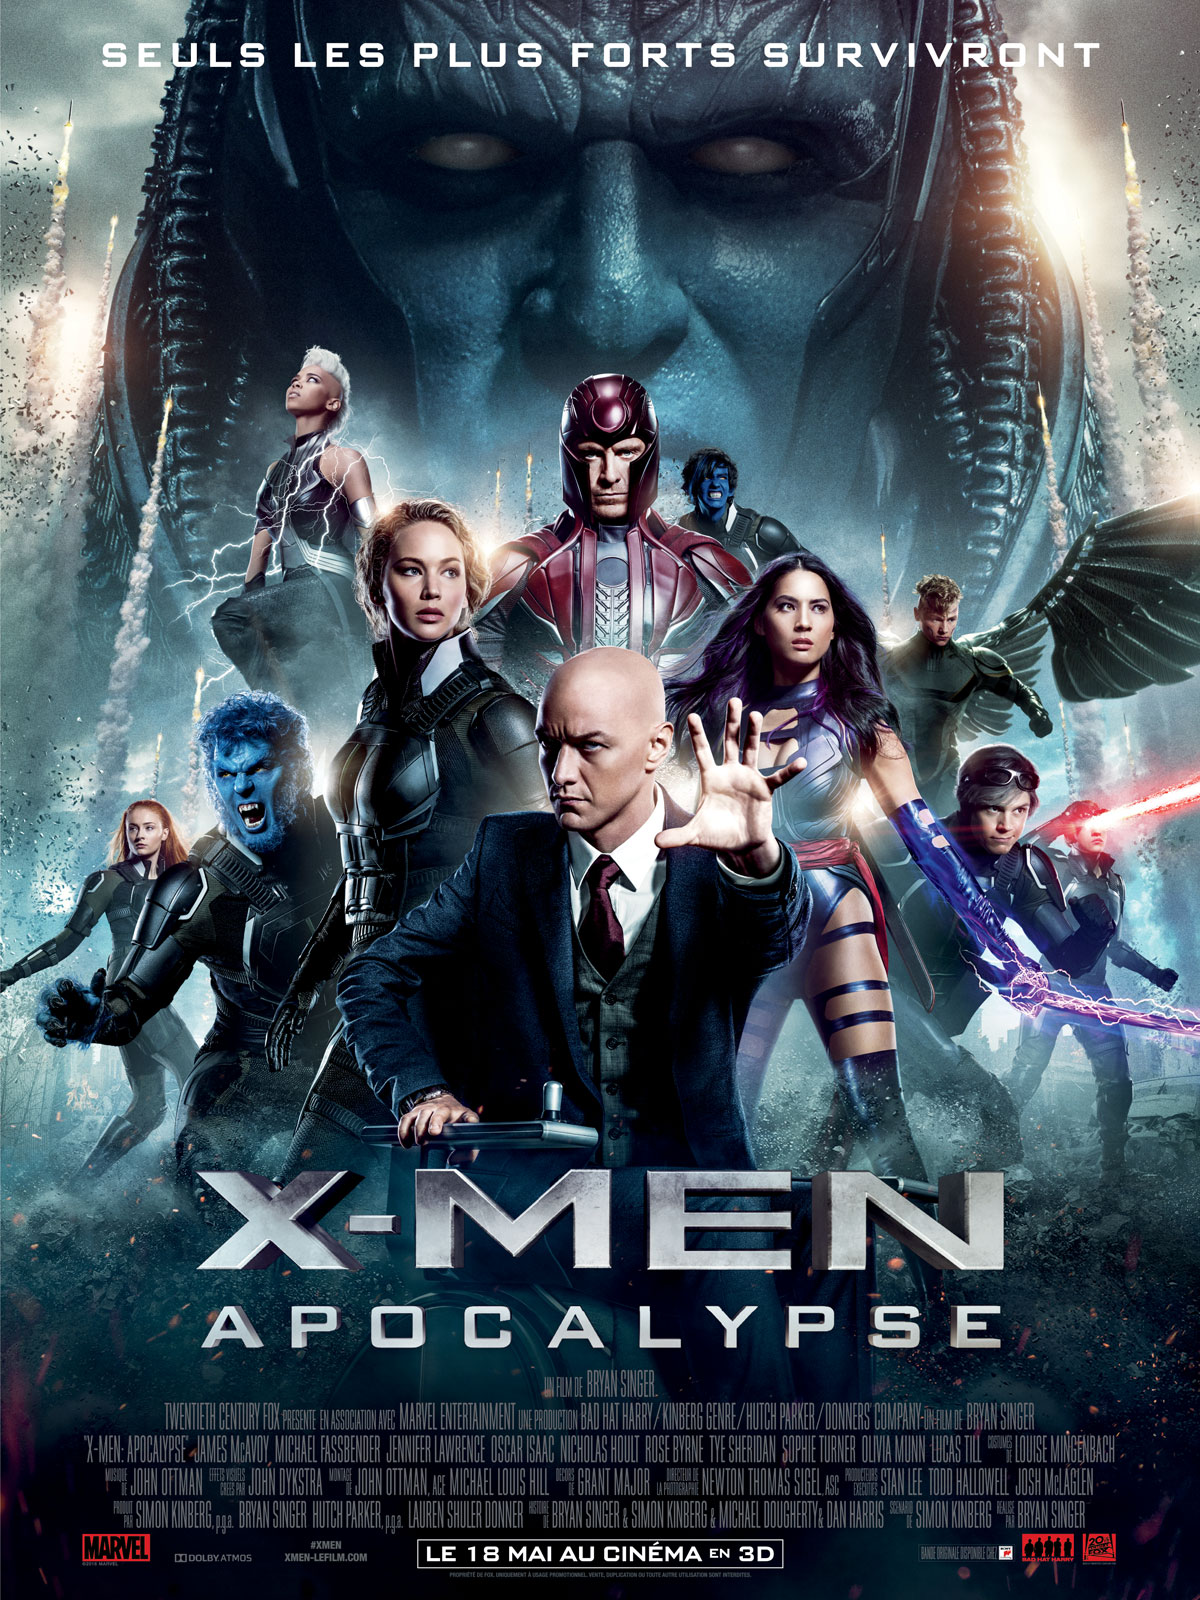 « X-Men Apocalypse » de Bryan Singer – La chronique apocalyptique
et toc !